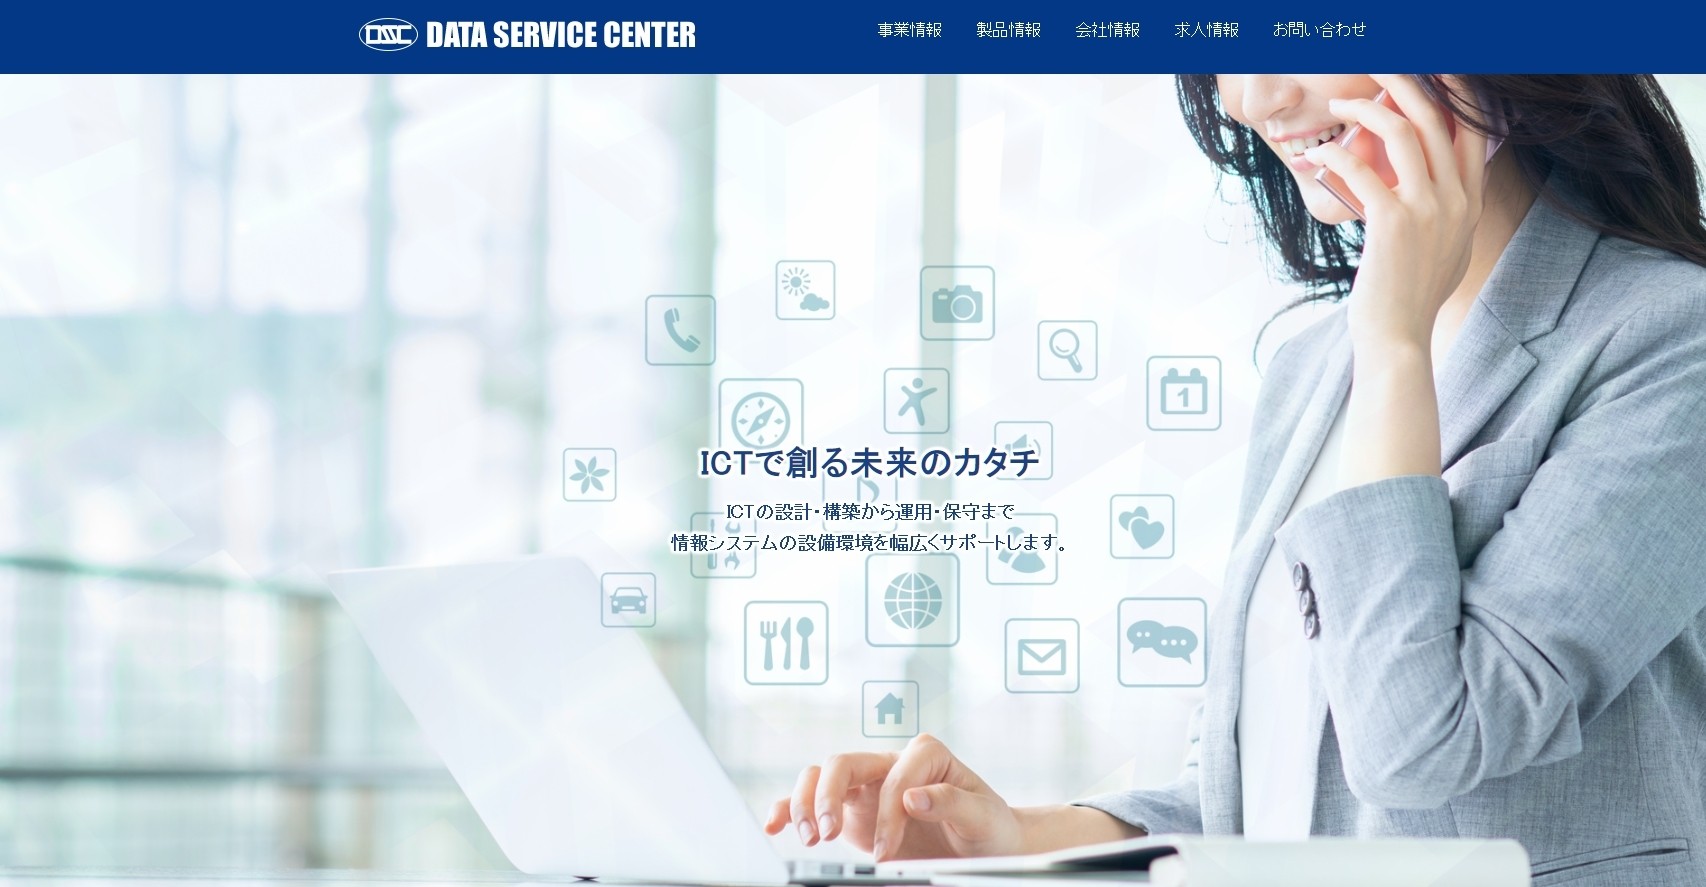 株式会社データサービスセンターの株式会社データサービスセンターサービス